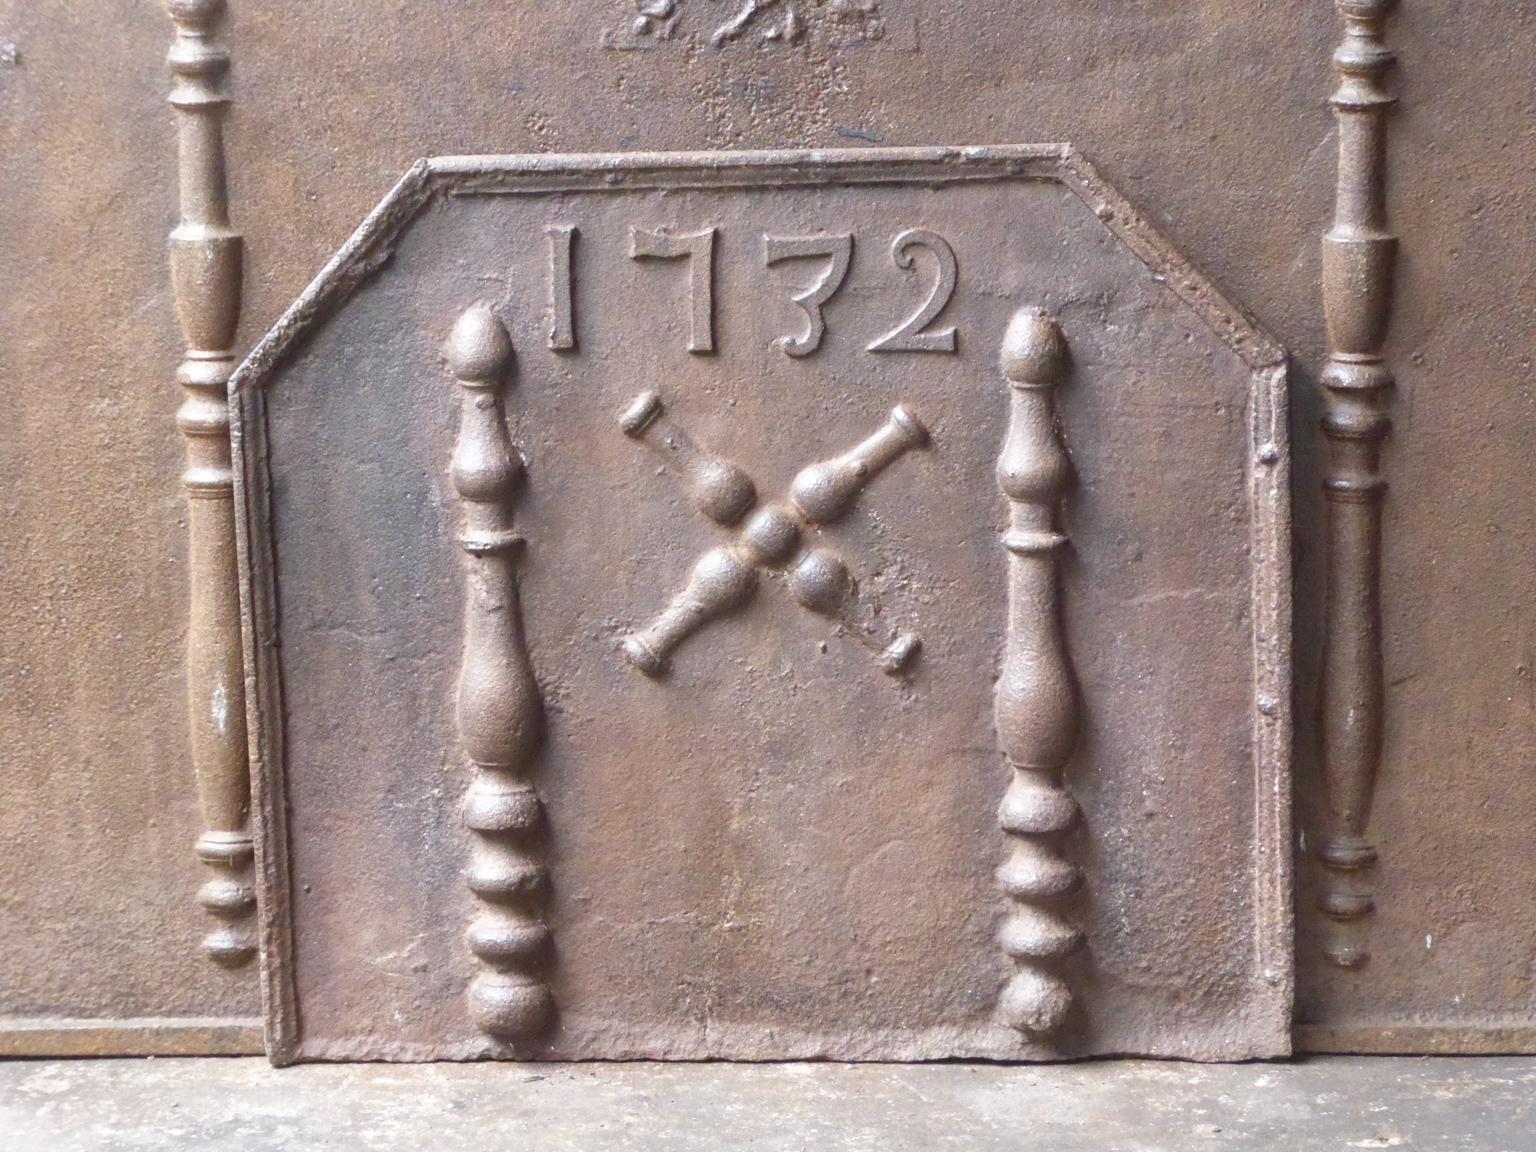 Schöner französischer Kaminboden aus dem 18. Jahrhundert mit einem Andreaskreuz und zwei Herkulessäulen. Der heilige Andreas soll an einem Kreuz in dieser Form gemartert worden sein. Das Kreuz ist seither ein Zeichen für Demut und Opferbereitschaft.